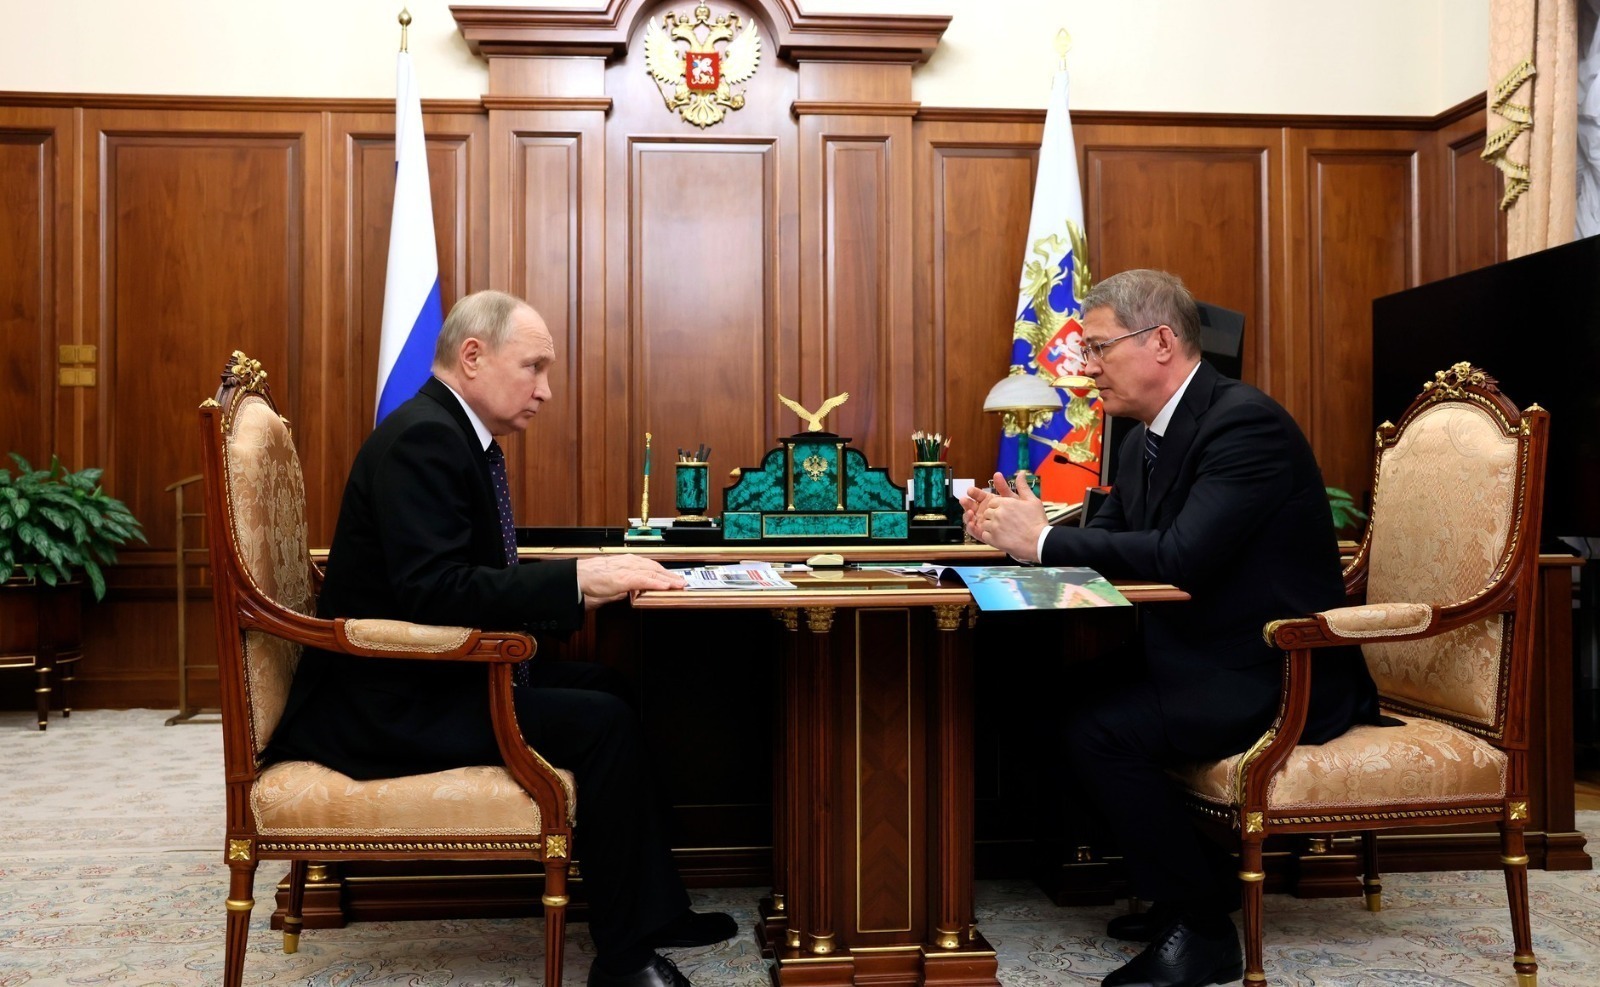 Встреча Путина с Хабировым, Уфа приняла эстафету форума. Главное в Башкирии